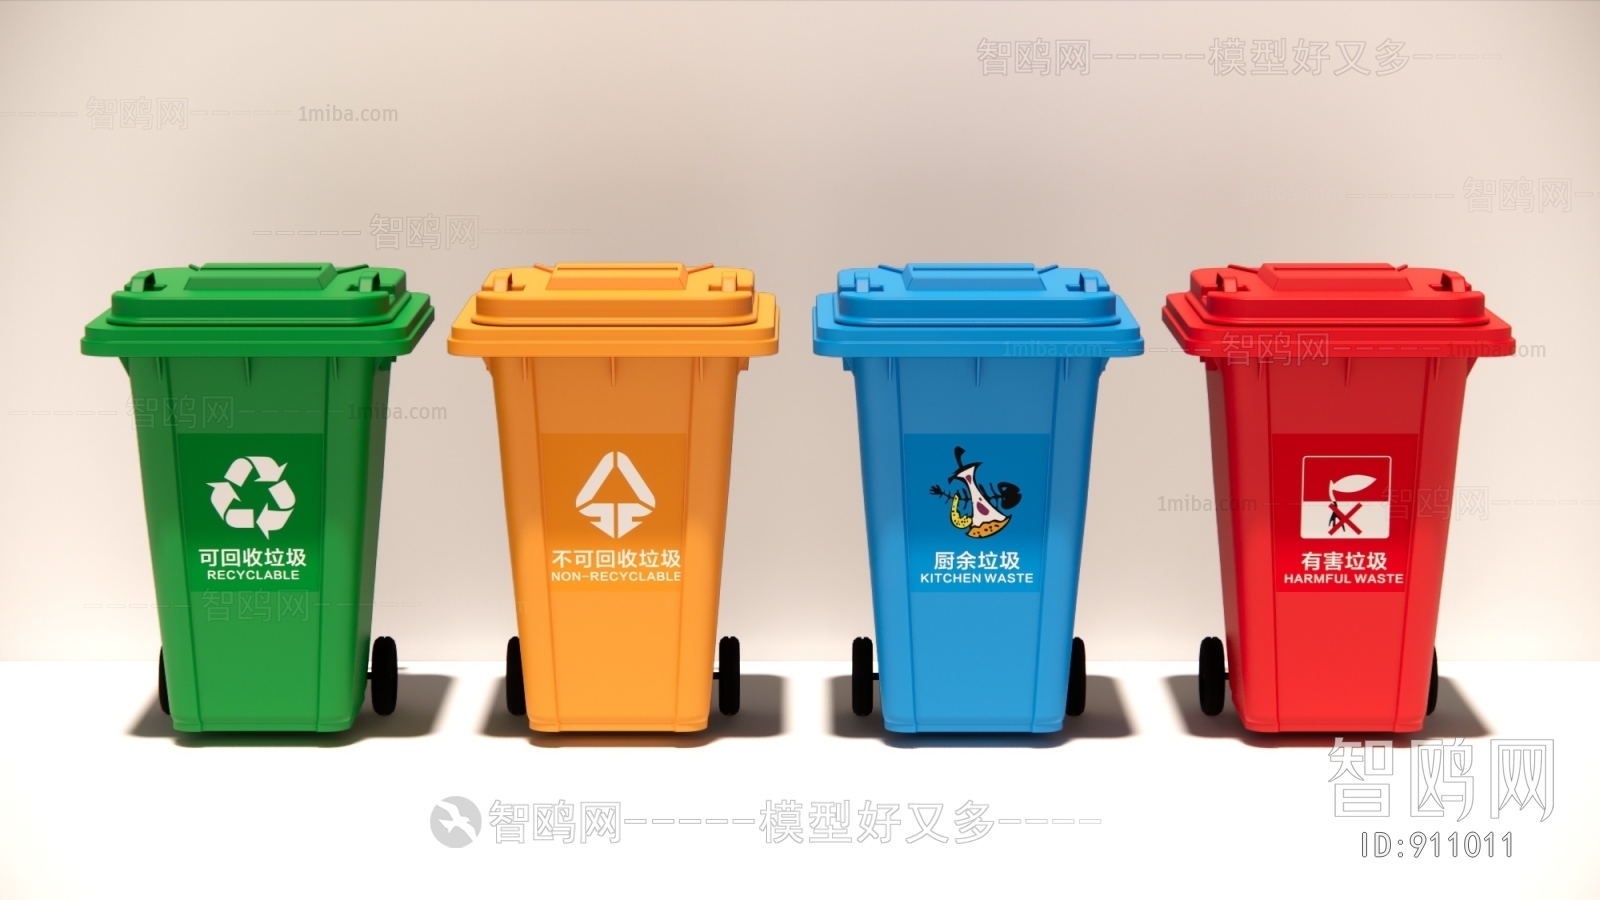 现代垃圾分类 垃圾桶组合